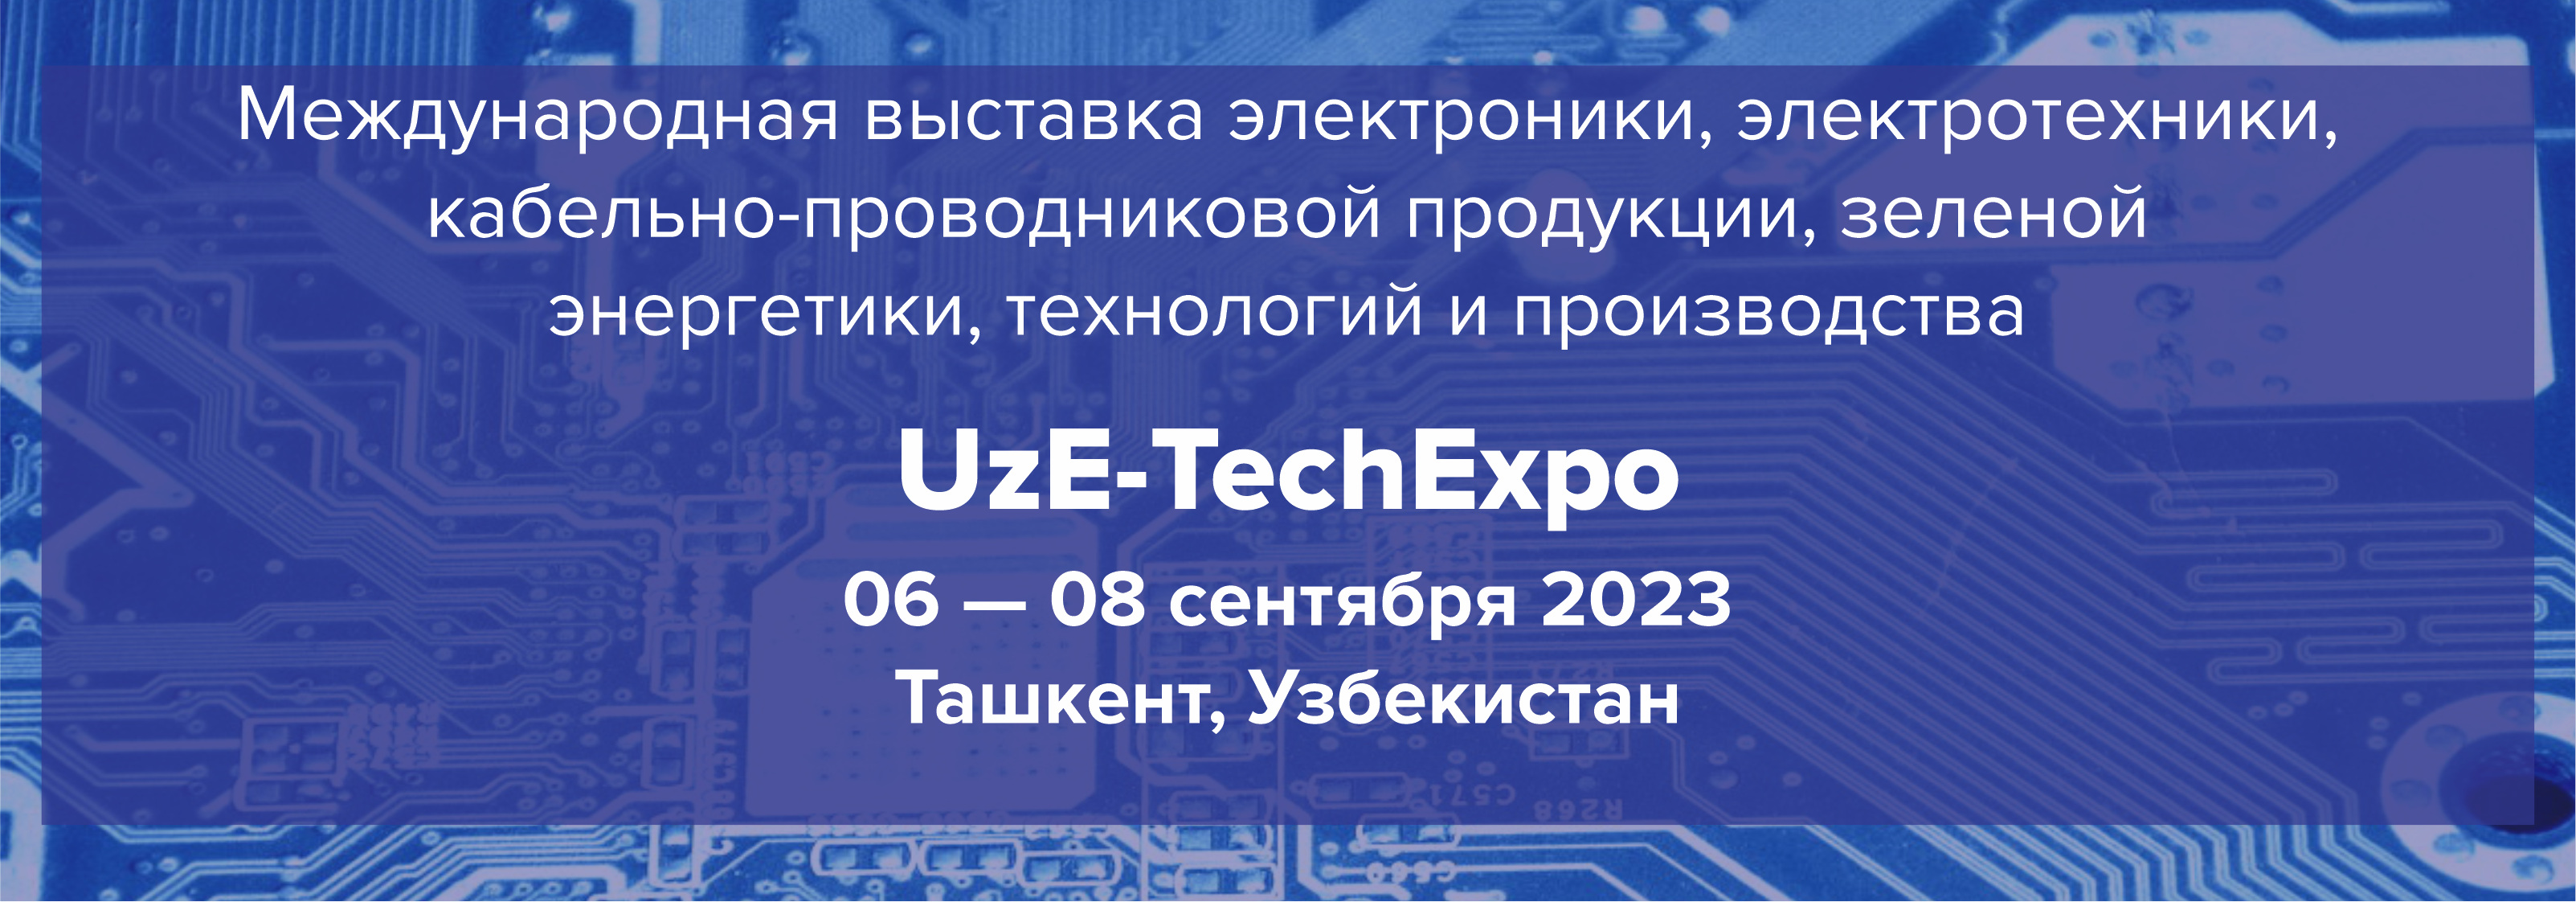 UzE-TechExpo 2023  представляет новинки мира электроники